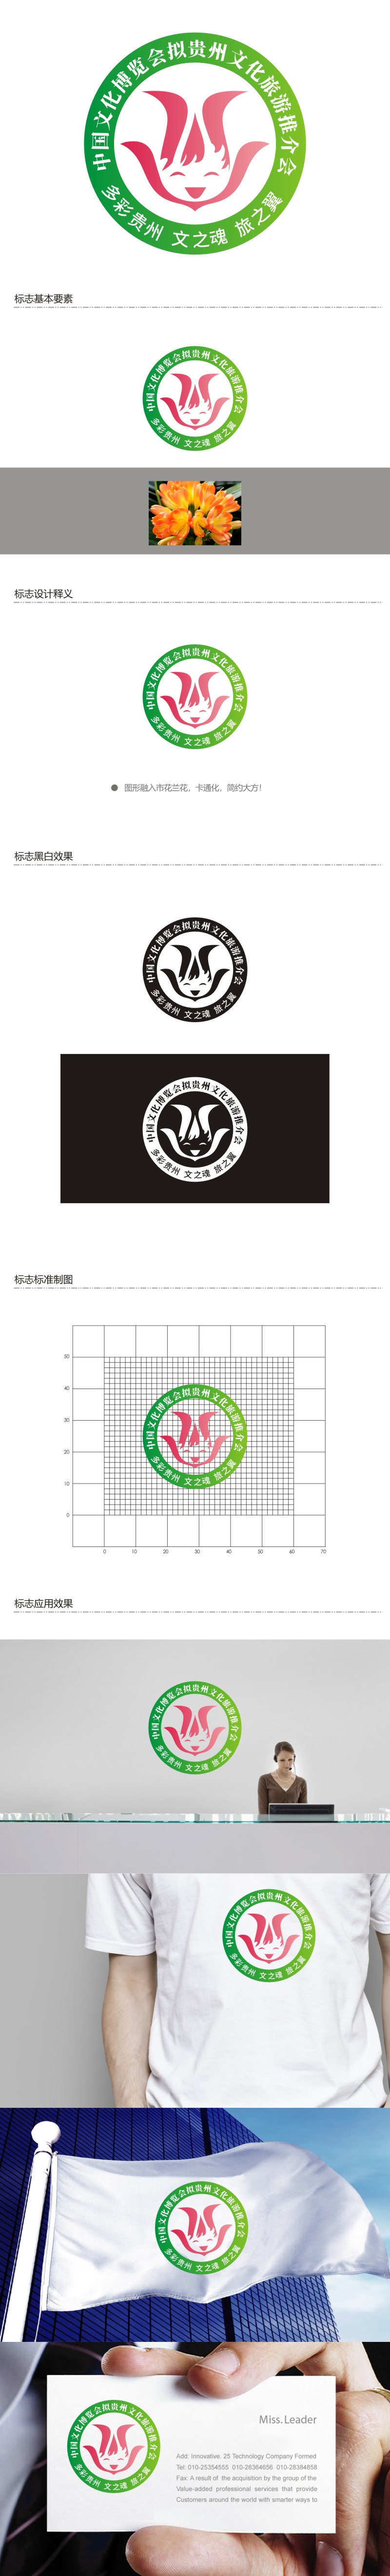 谭家强的中国文化博览会拟贵州文化旅游推介会logo设计